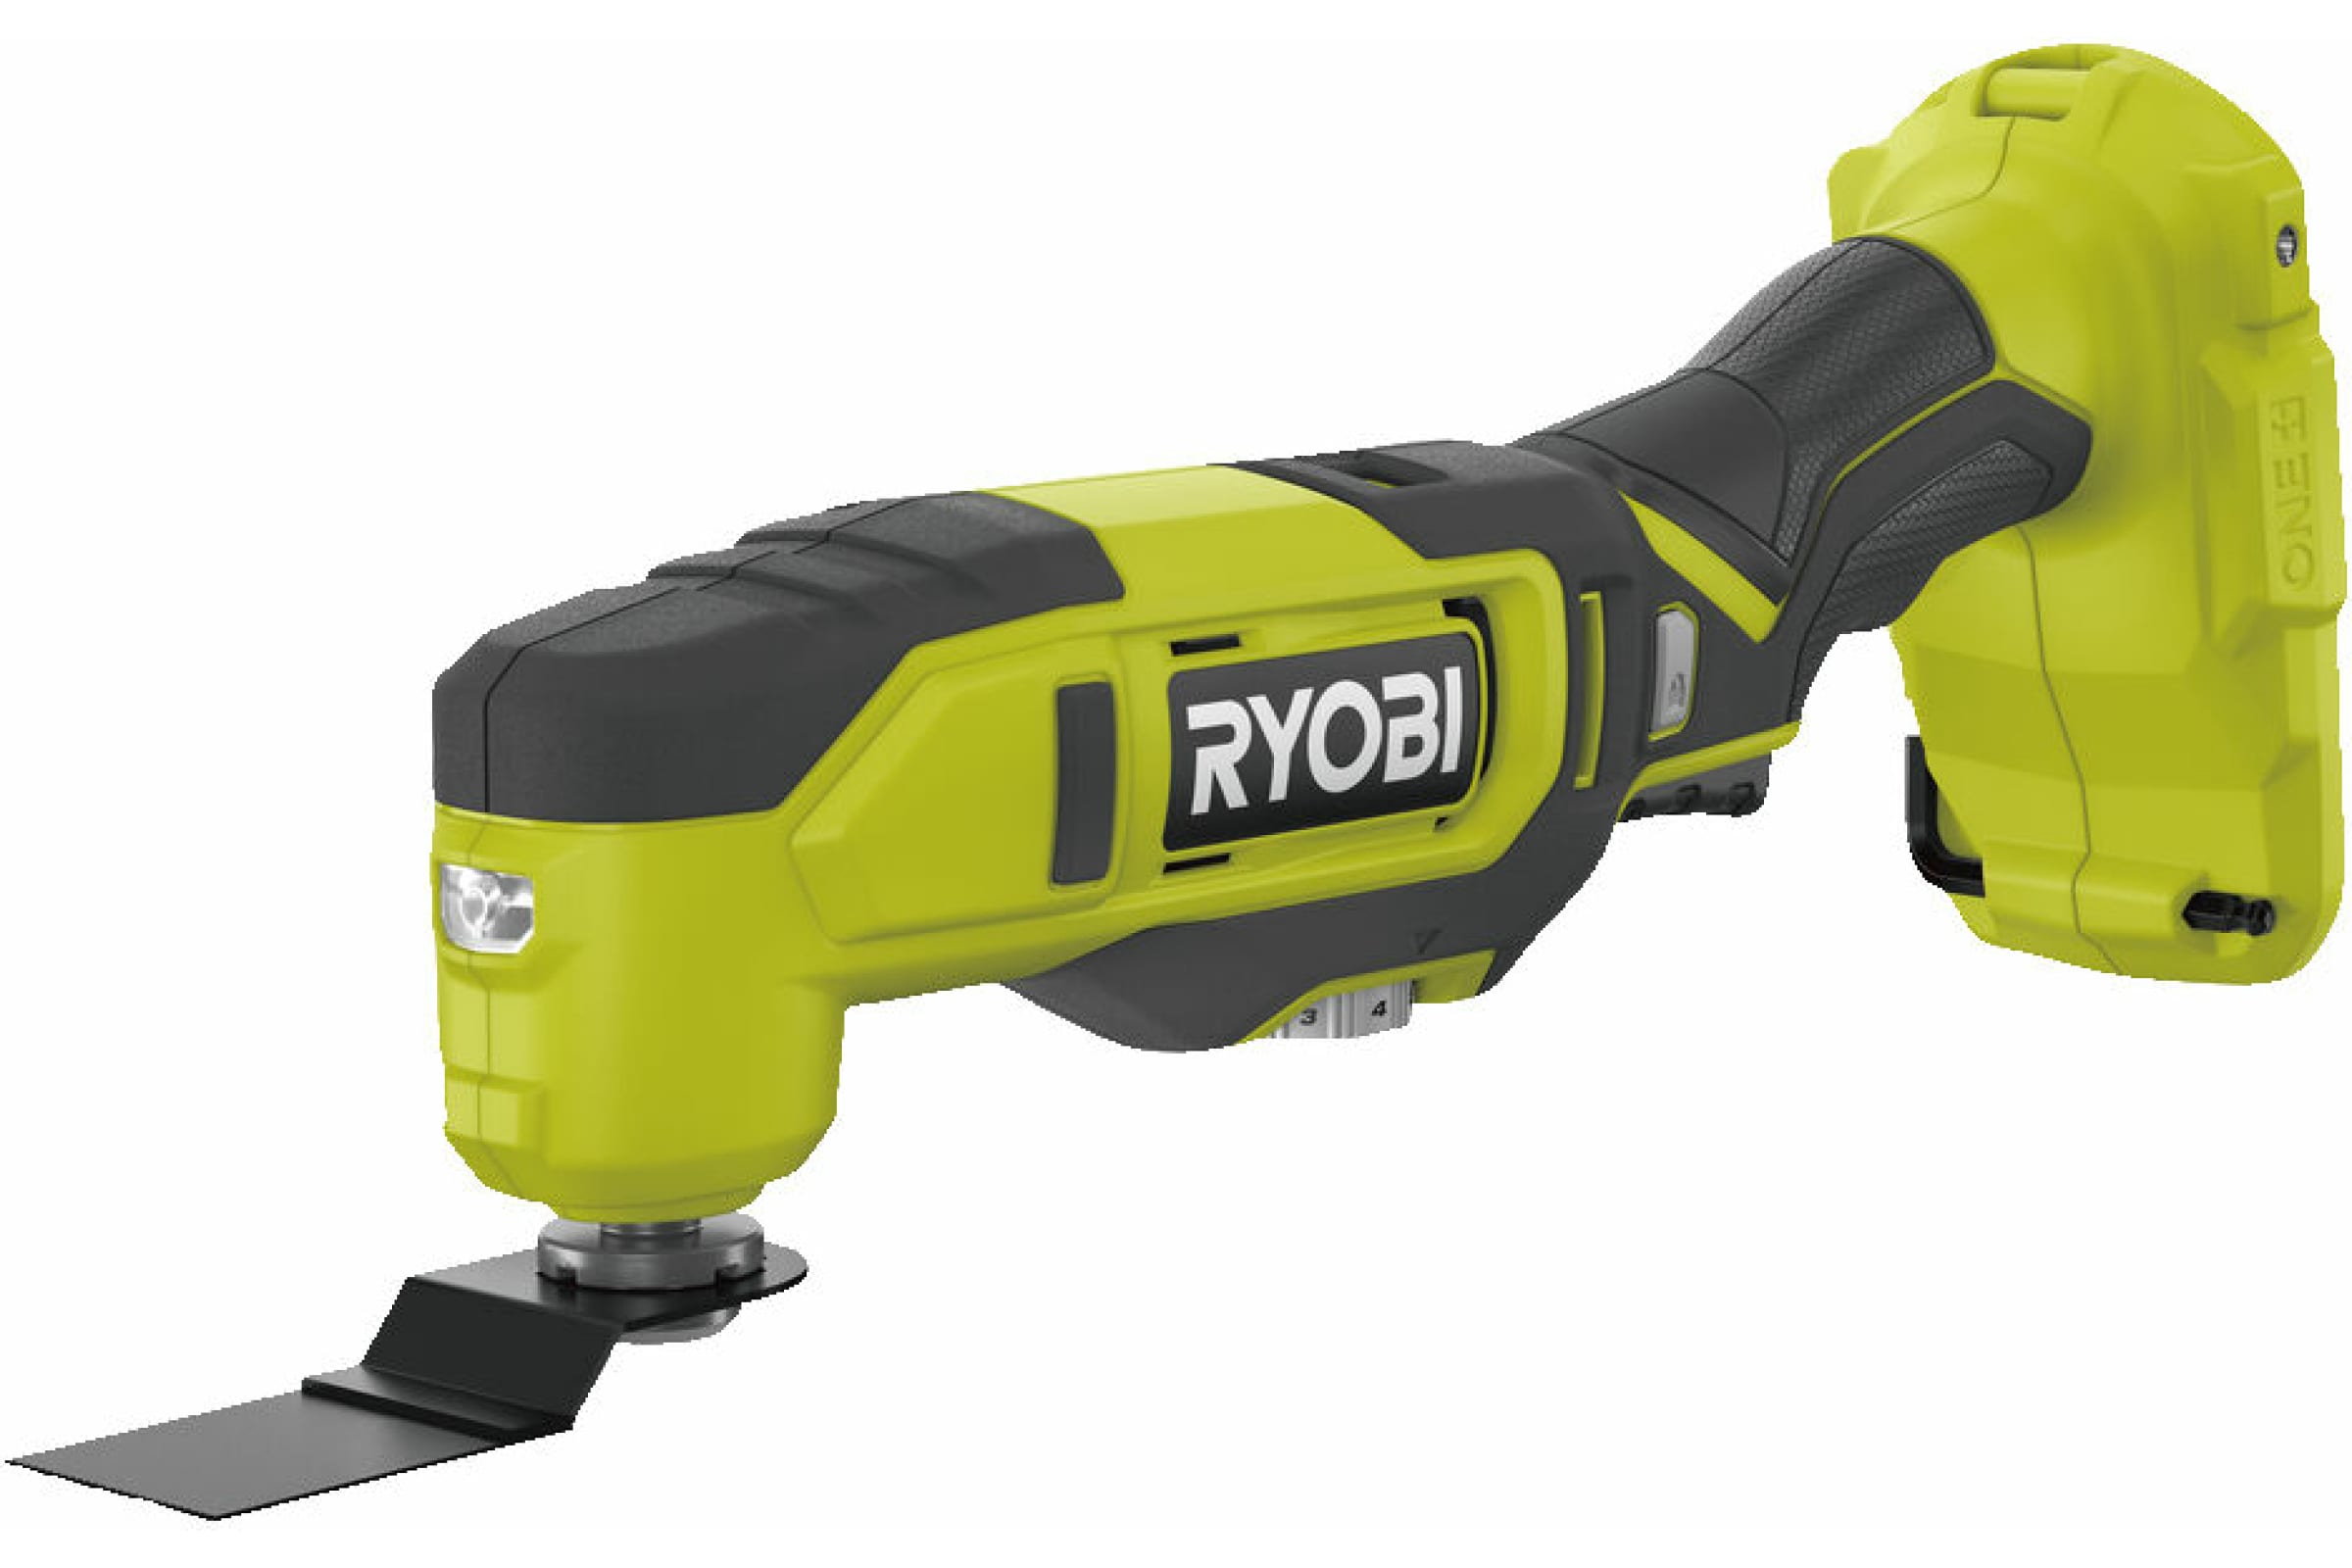 Ryobi 18В Многофункциональный инструмент RMT18-0 5133005346 эспандер ленточный многофункциональный 208 х 1 3 х 0 45 см 2 15 кг желтый